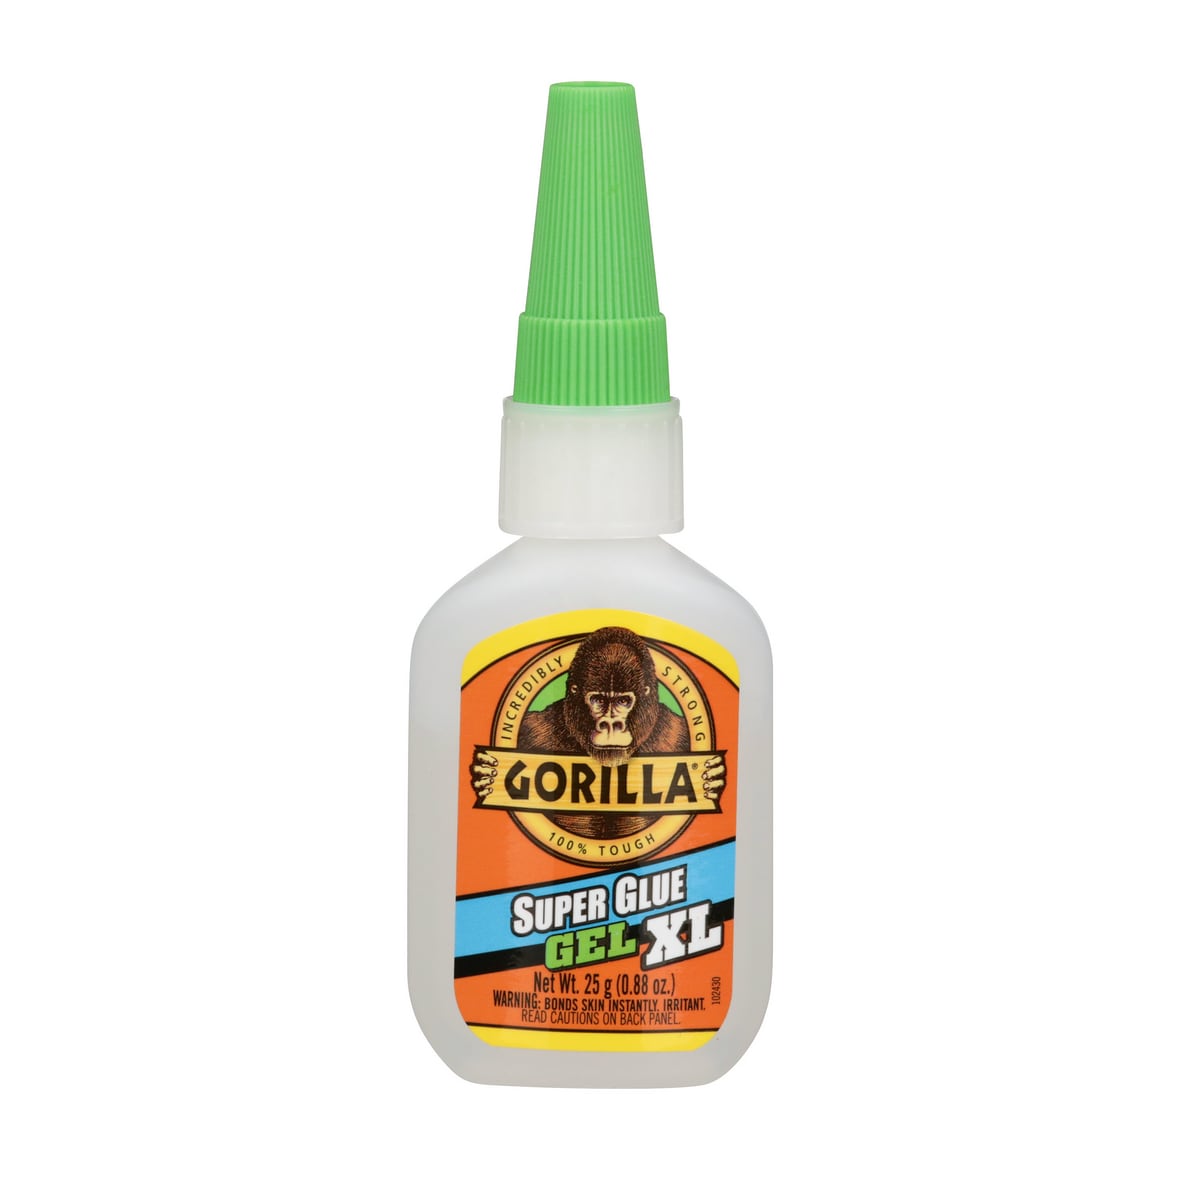 Gorilla Super Glue, 3 gram Tube - The Art Store/Commercial Art Supply